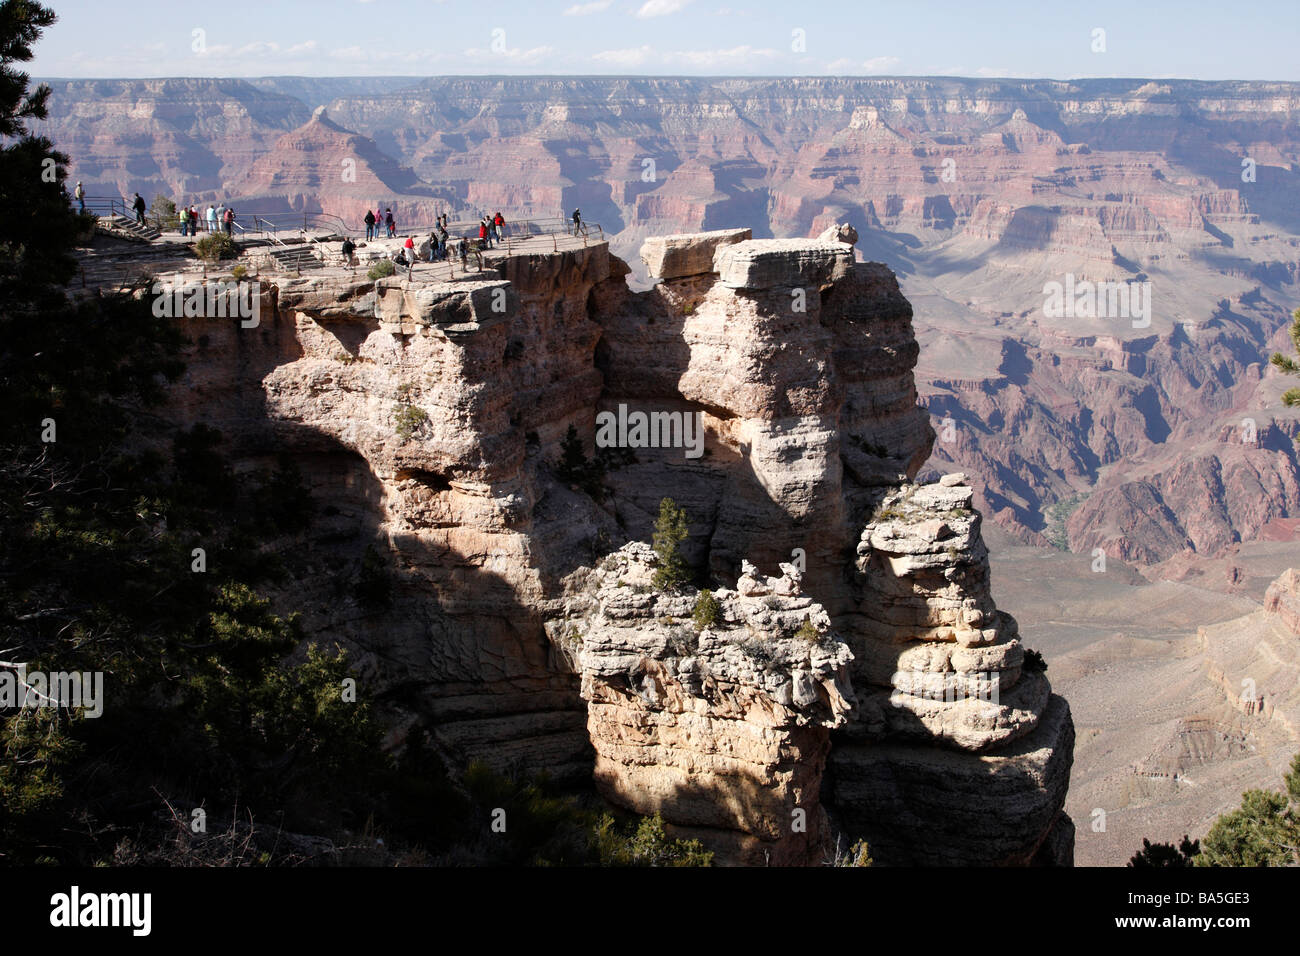 Touristen am Mather Point, einem beliebten Aussichtspunkten über den Grand Canyon South, rim Nationalpark Arizona usa Stockfoto